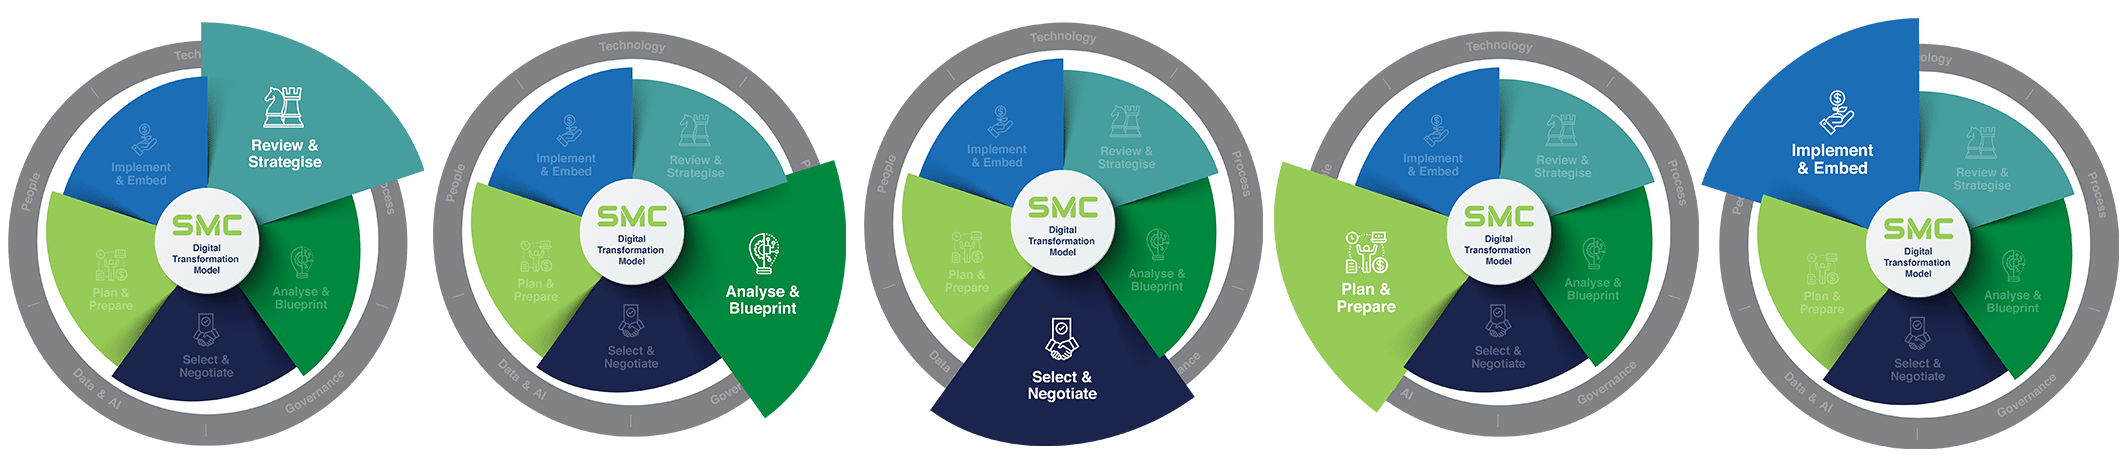 SMC Digital Transformation Model